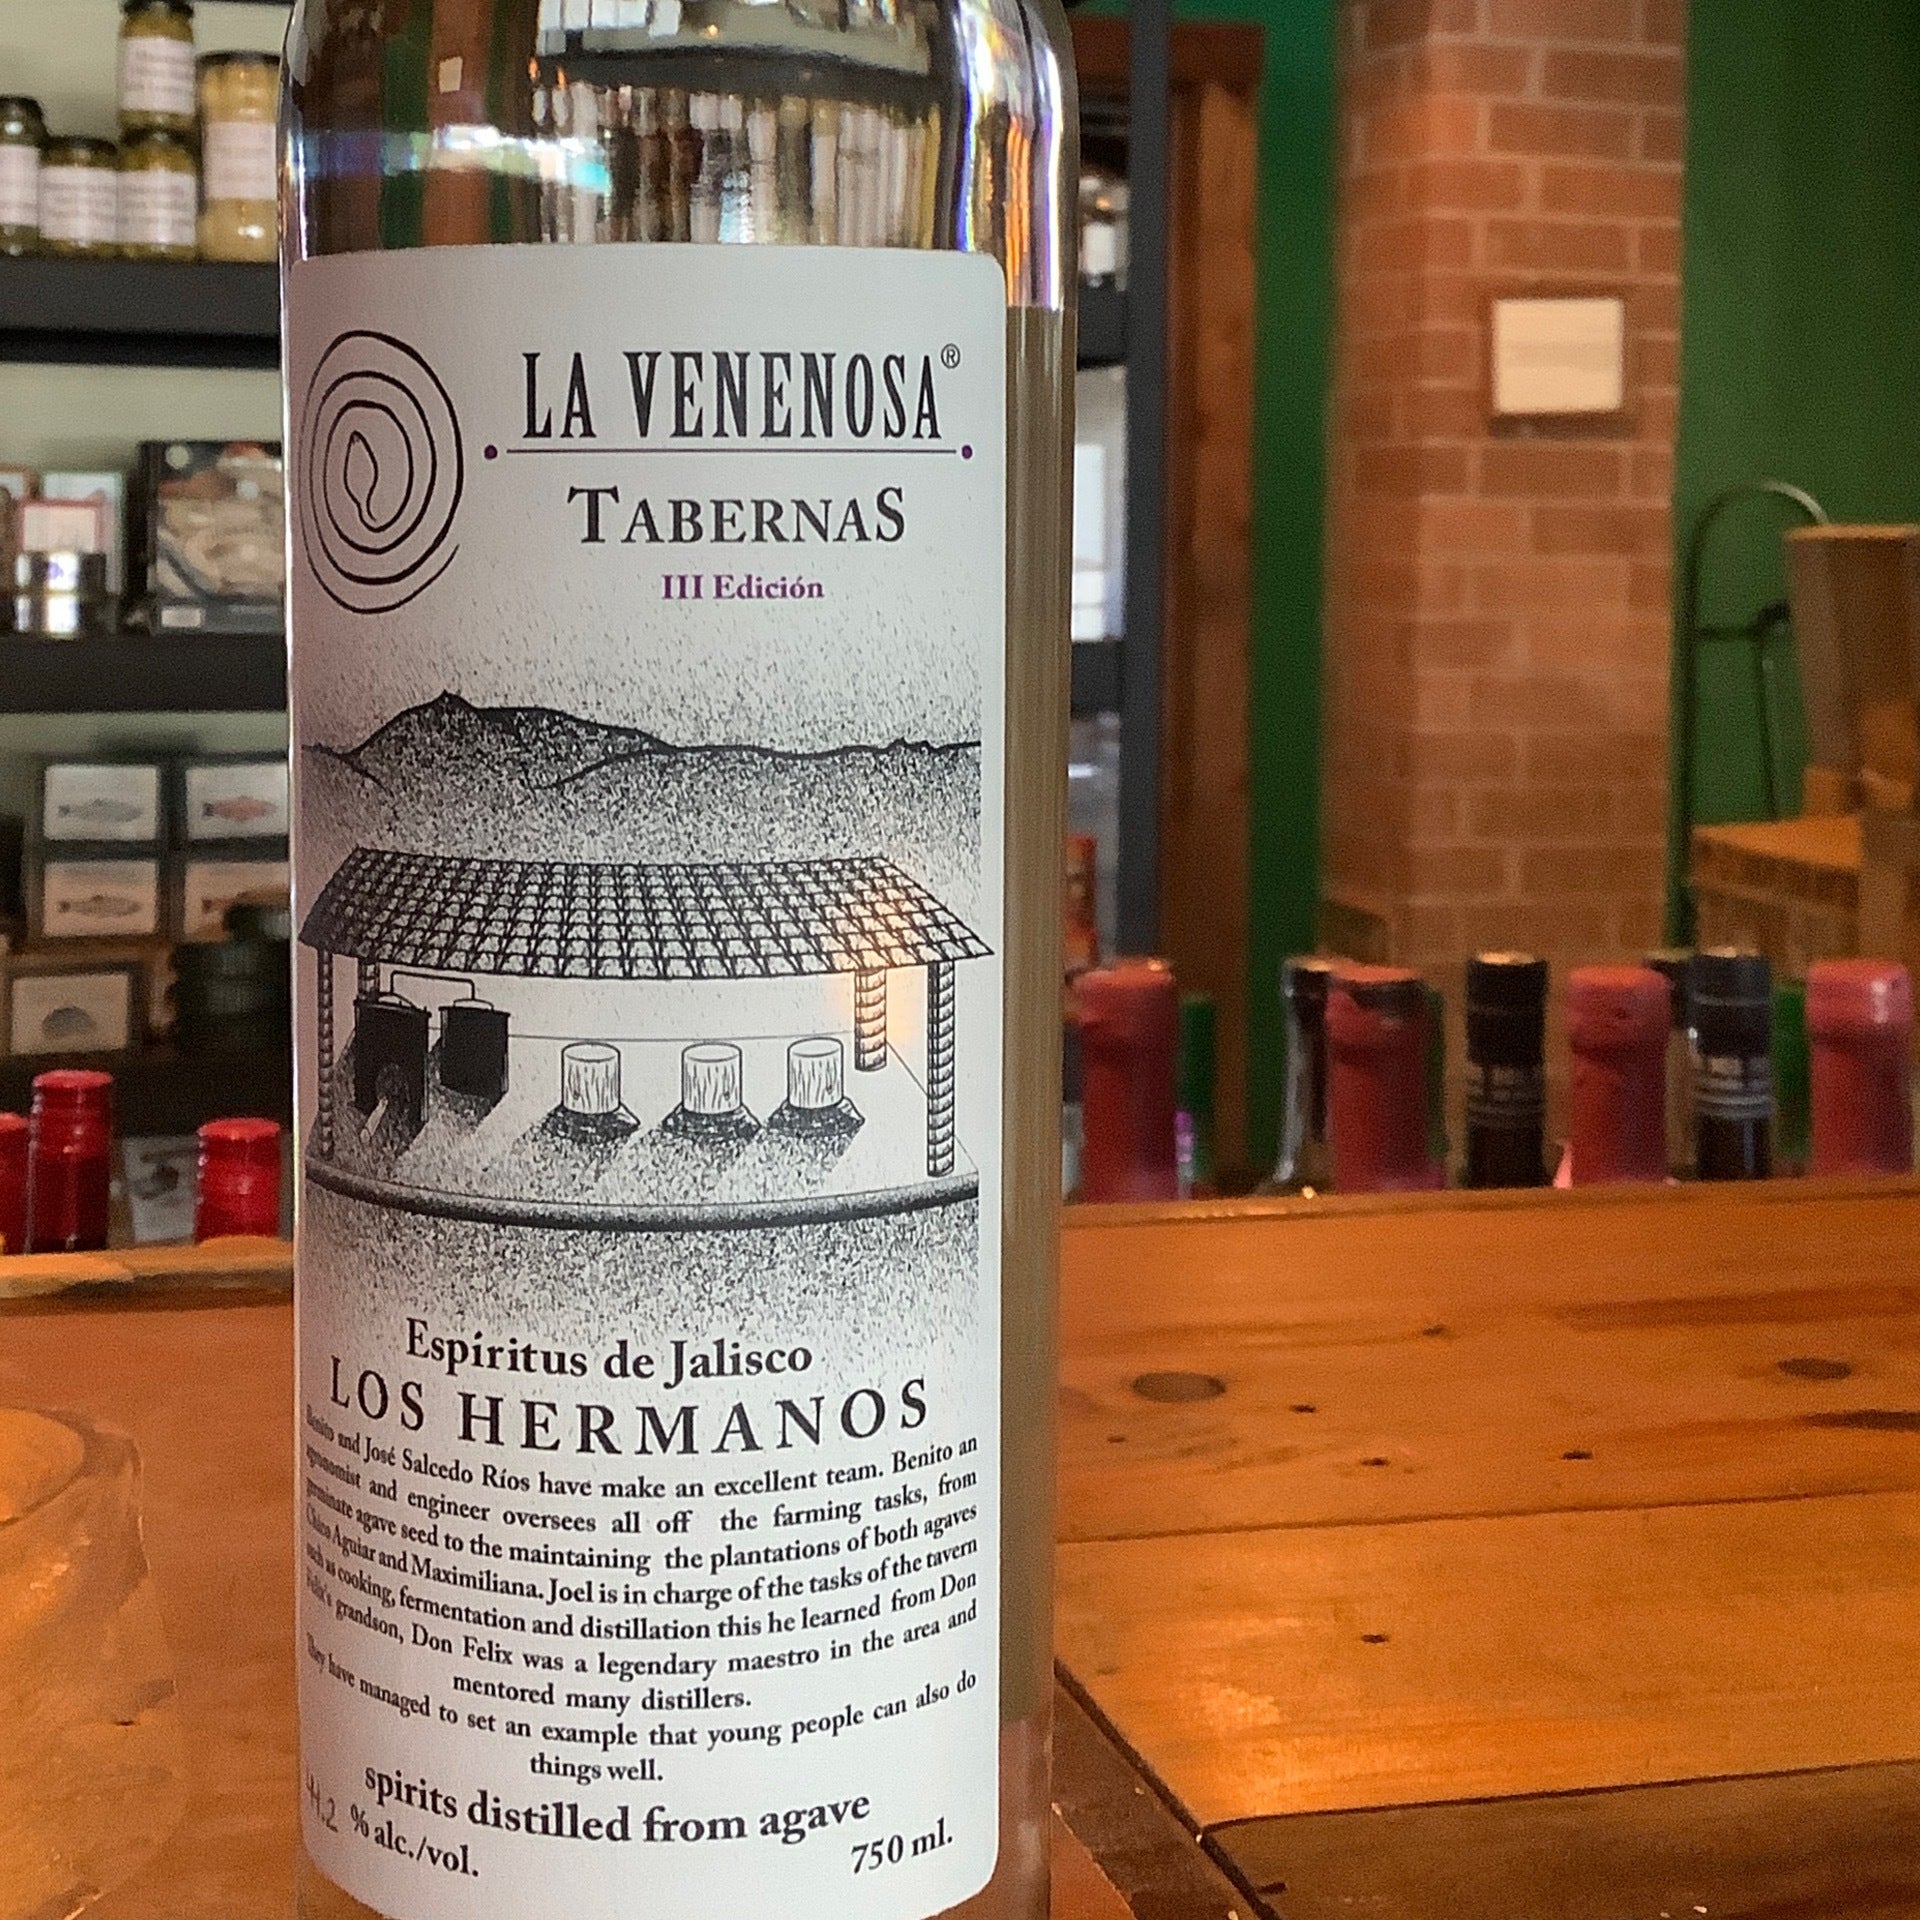 La Venenosa Tabernas Los Hermanos Raicilla, 3rd Edition – Shawn Fine Wine